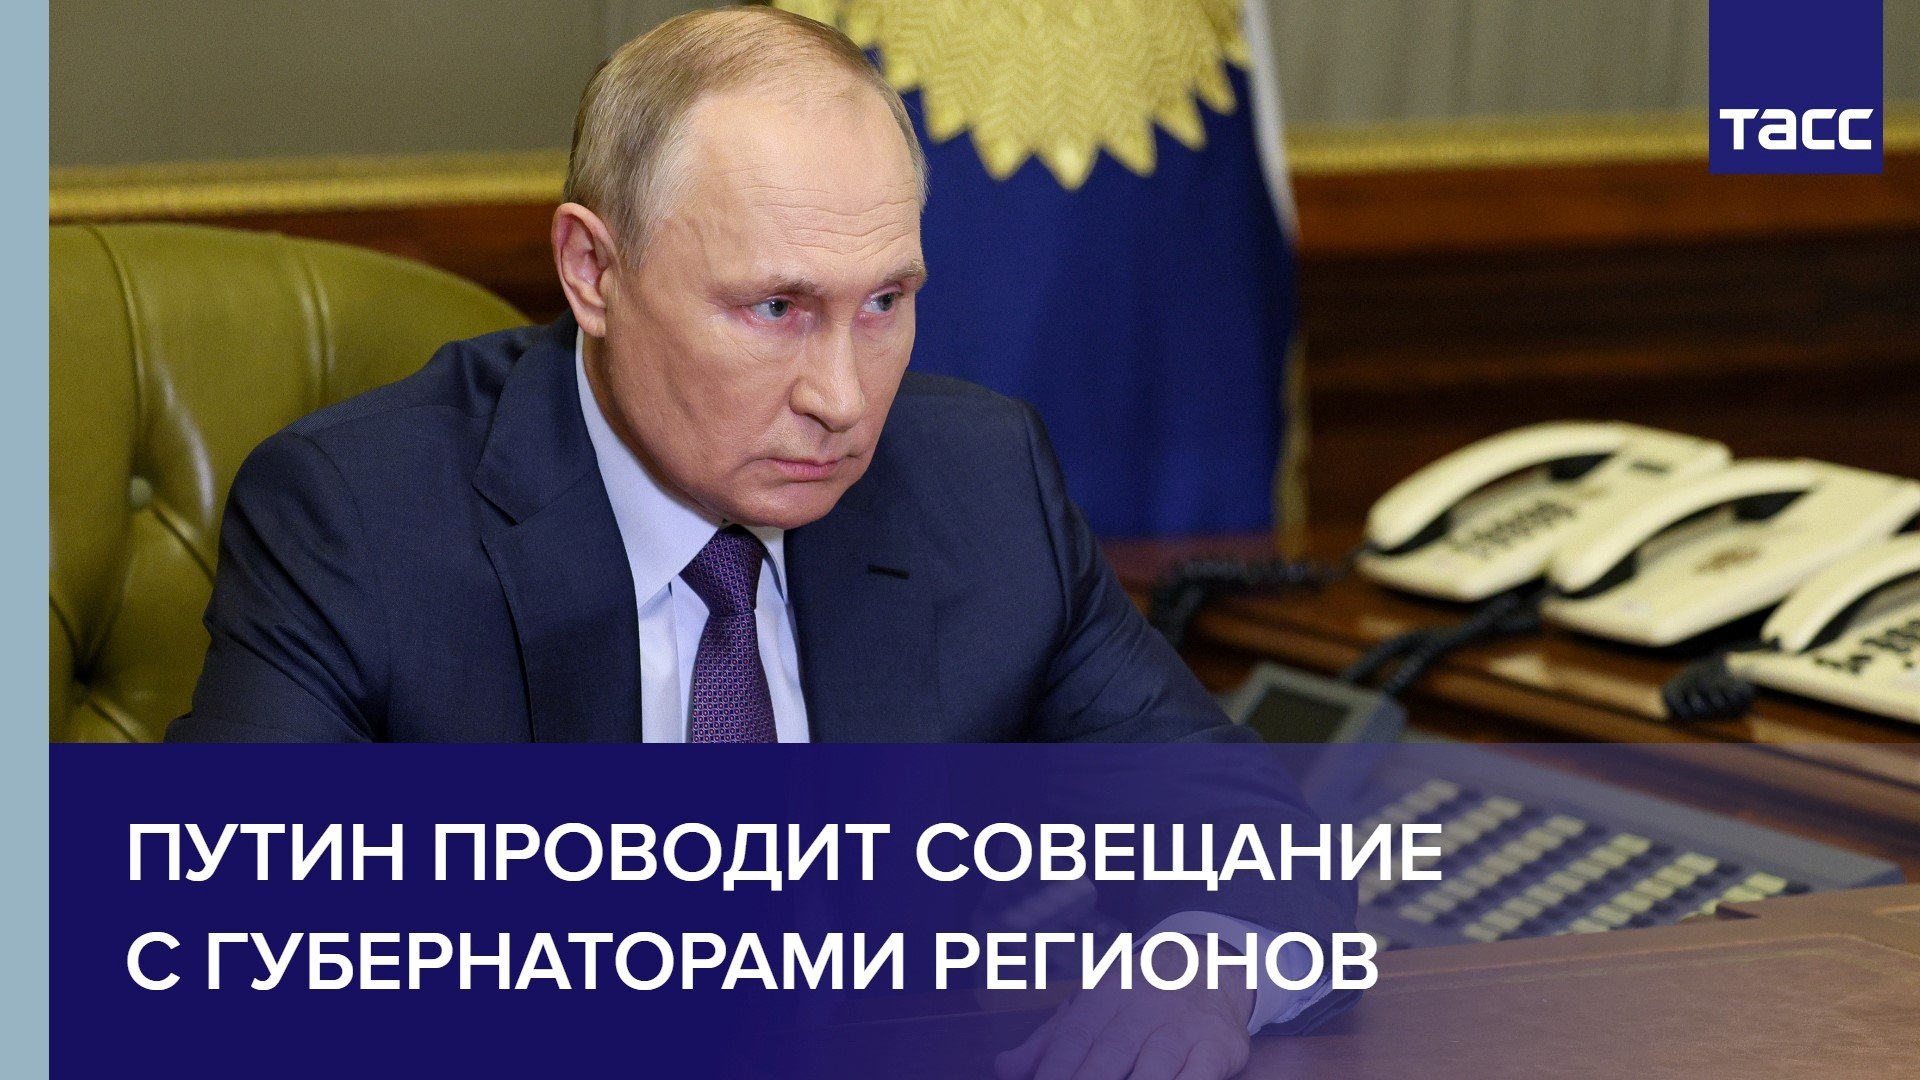 Путин проводит совещание с губернаторами регионов